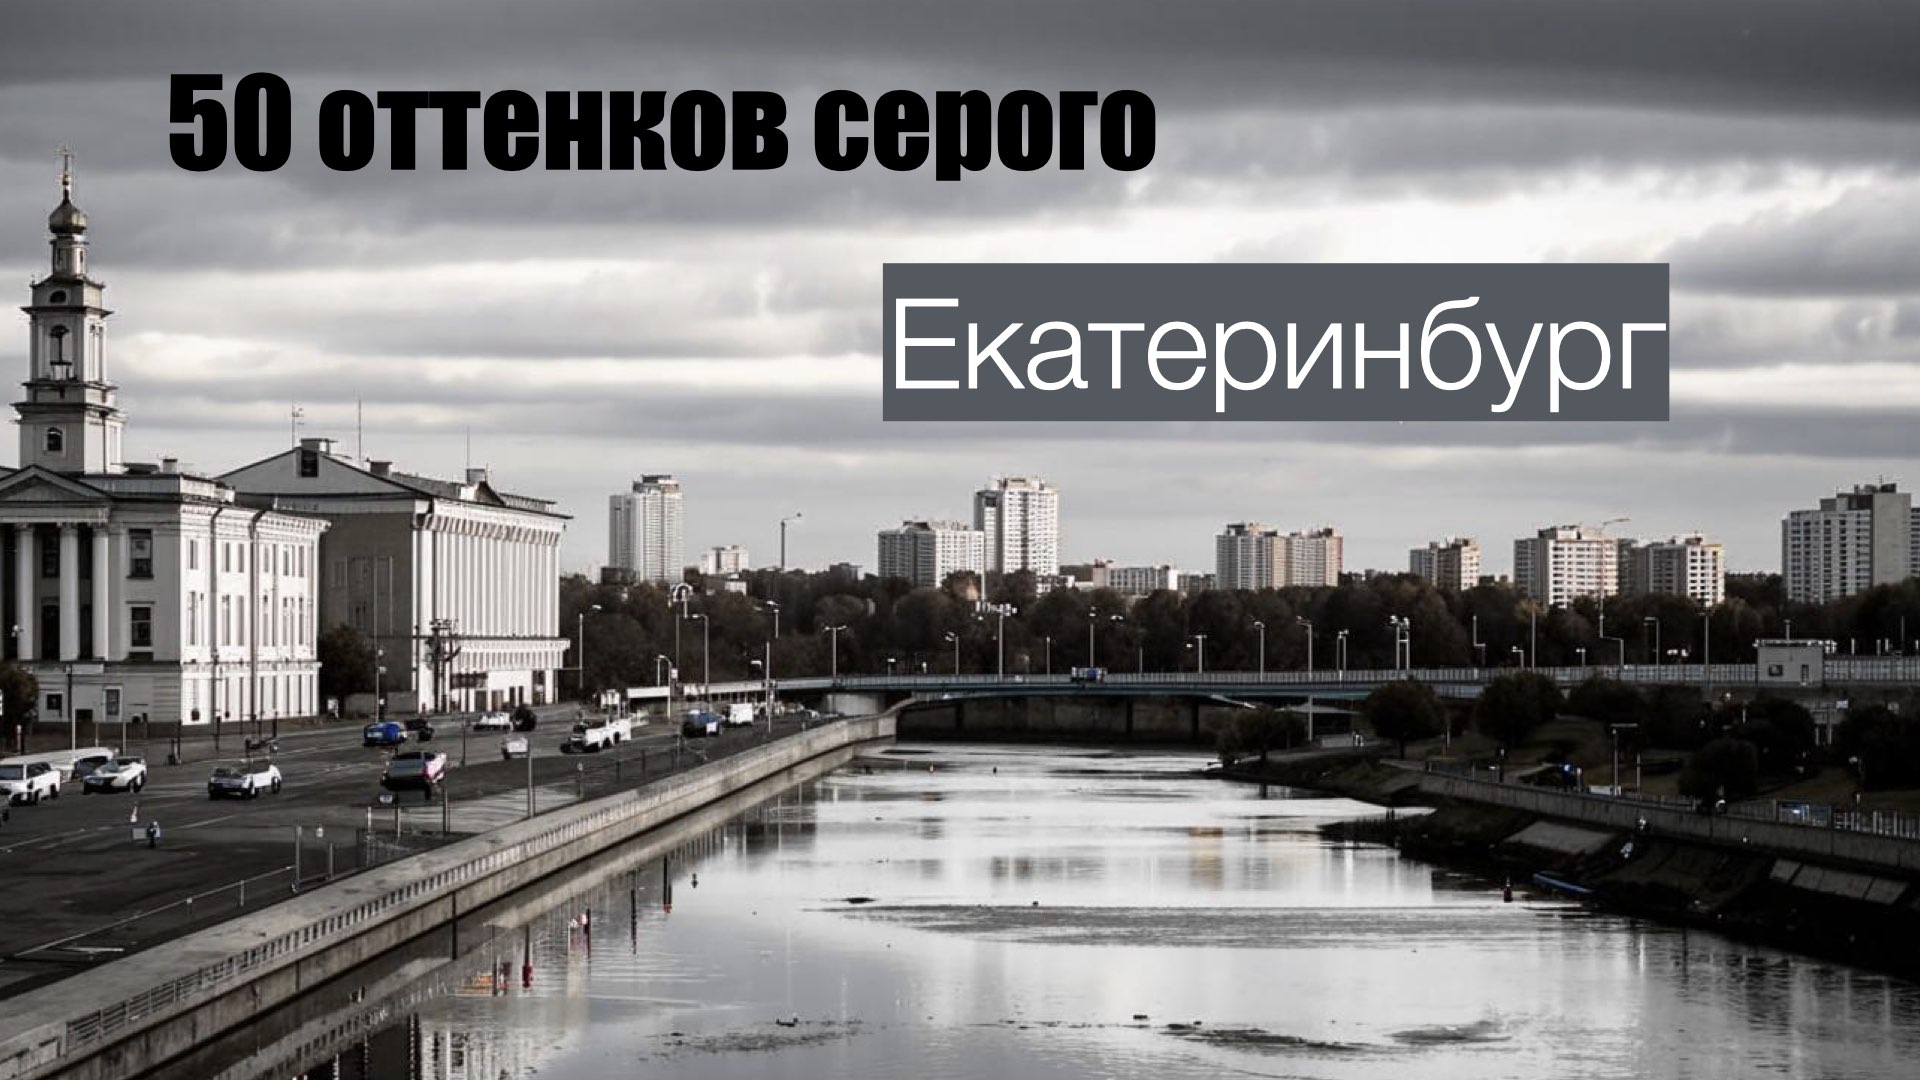 50 оттенков серого Екатеринбург